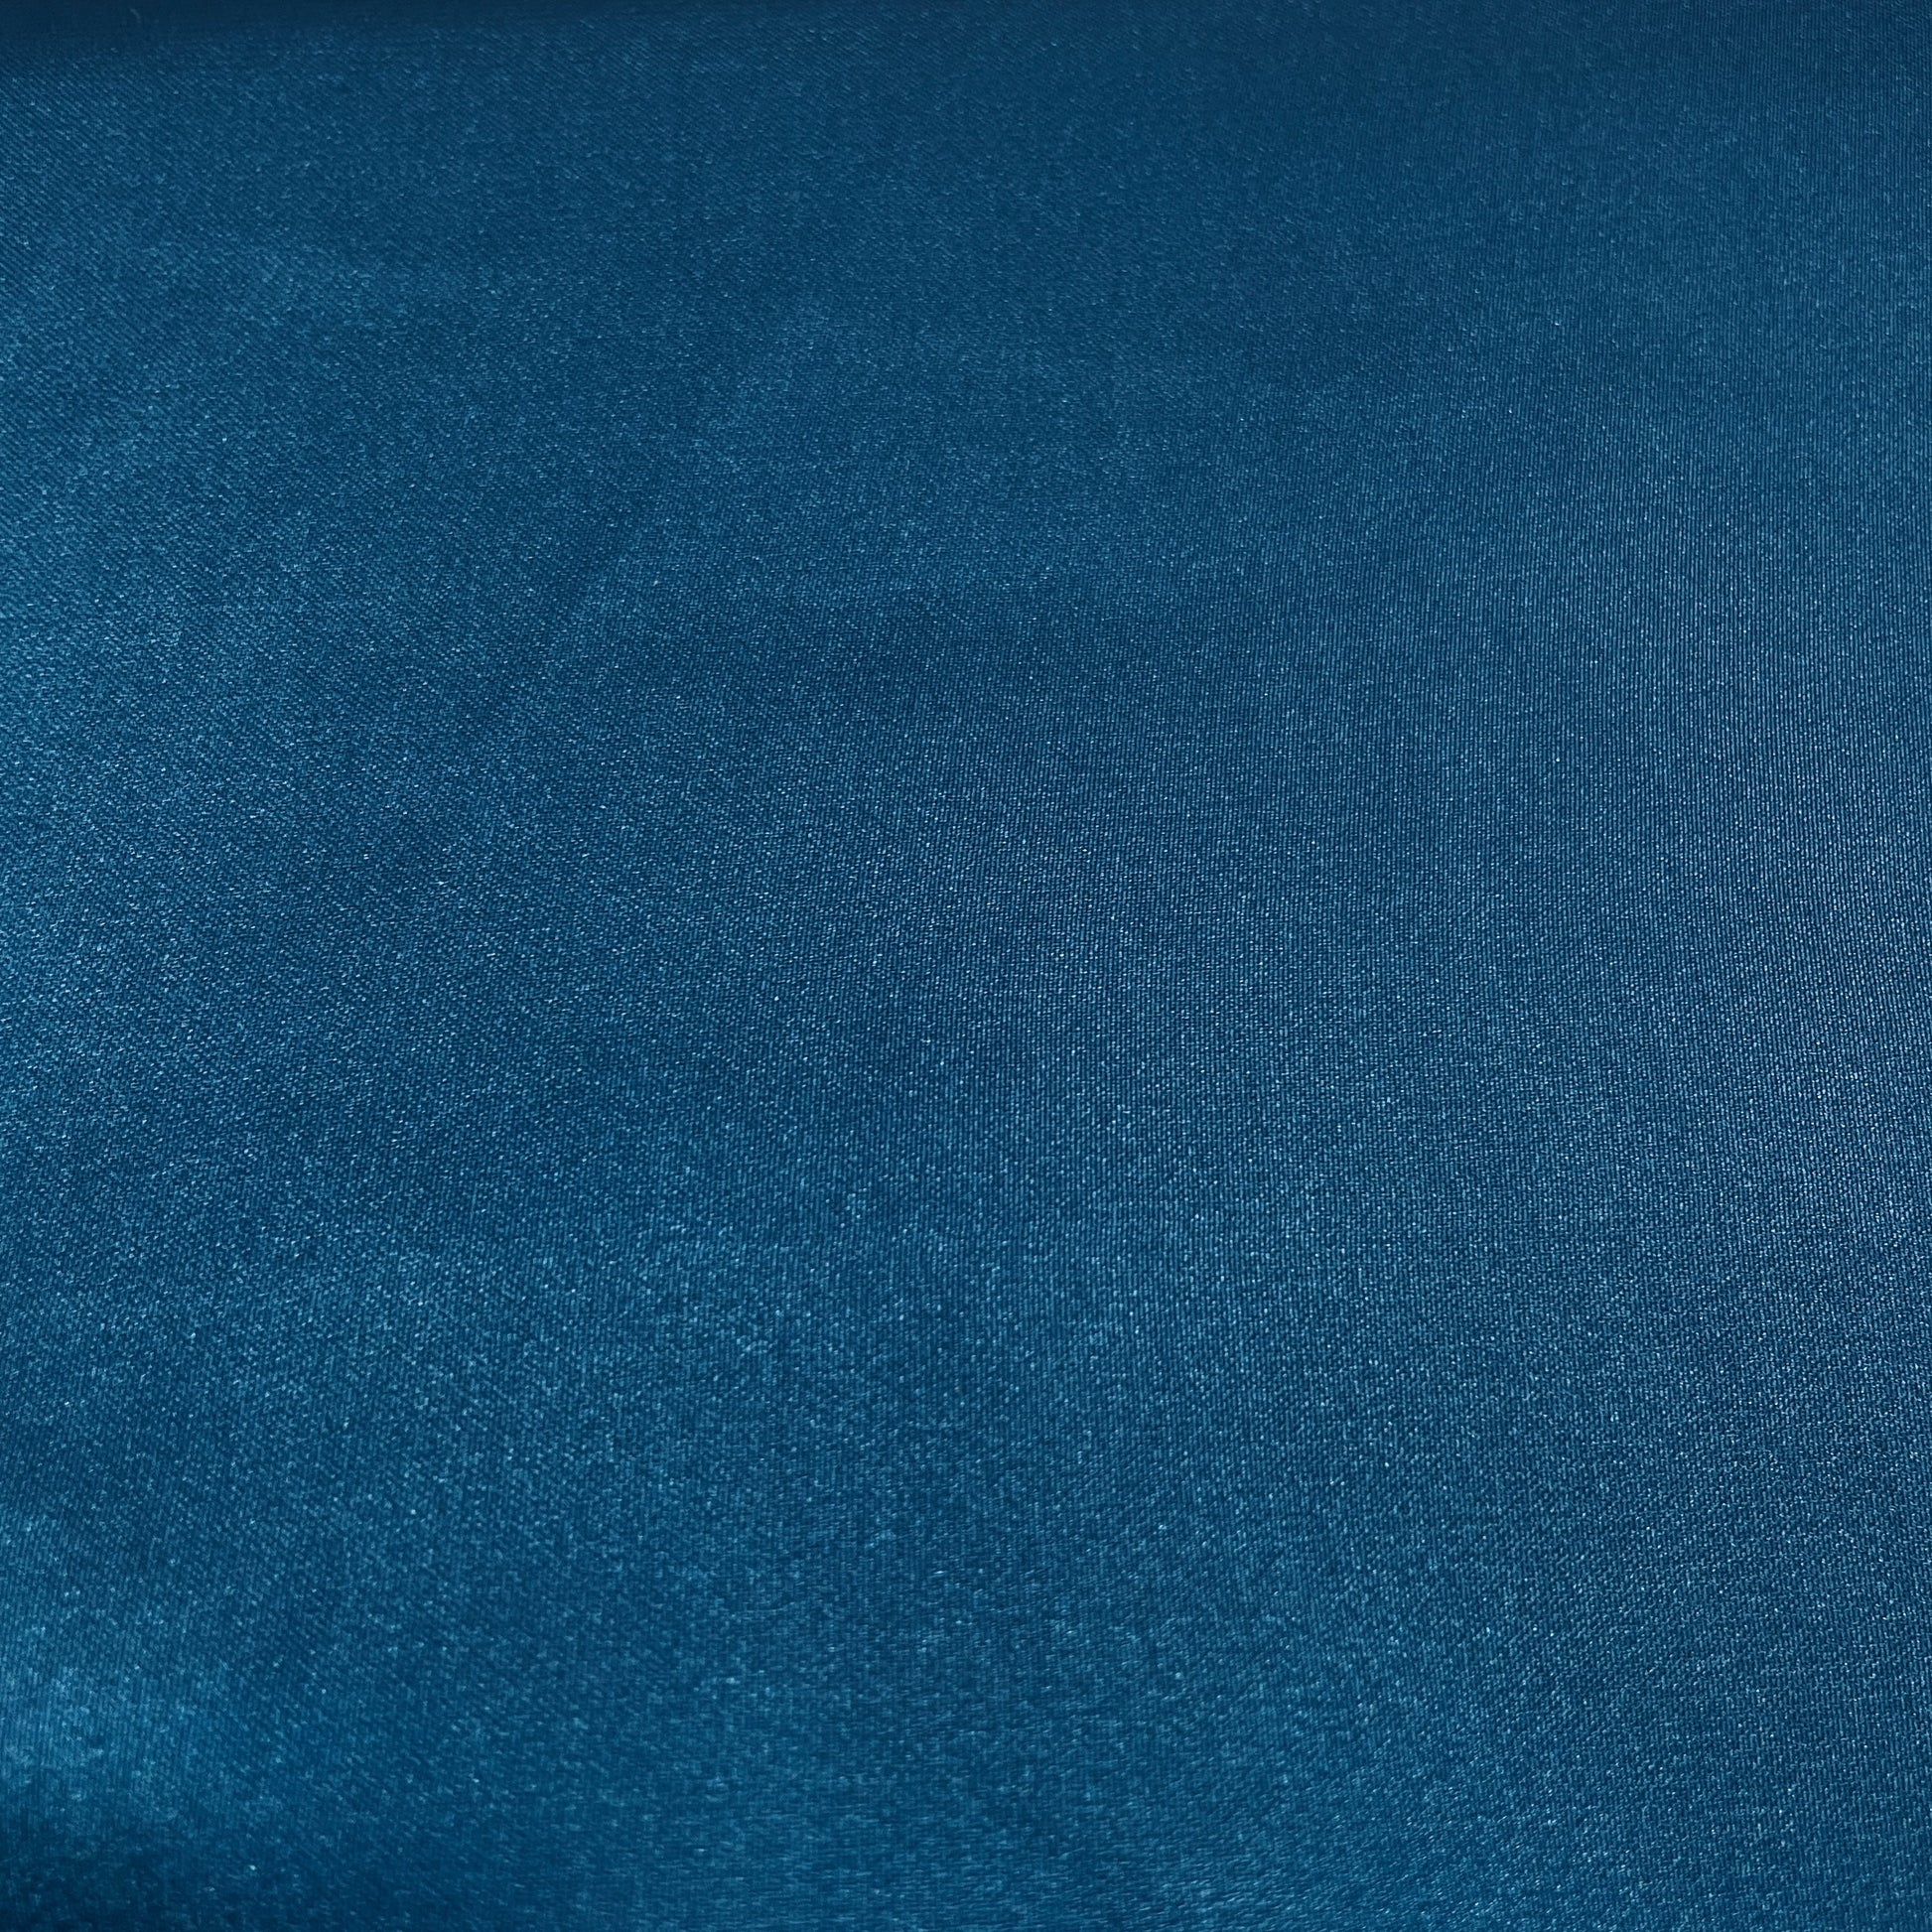 Teal Blue Armani Satin Fabric - TradeUNO